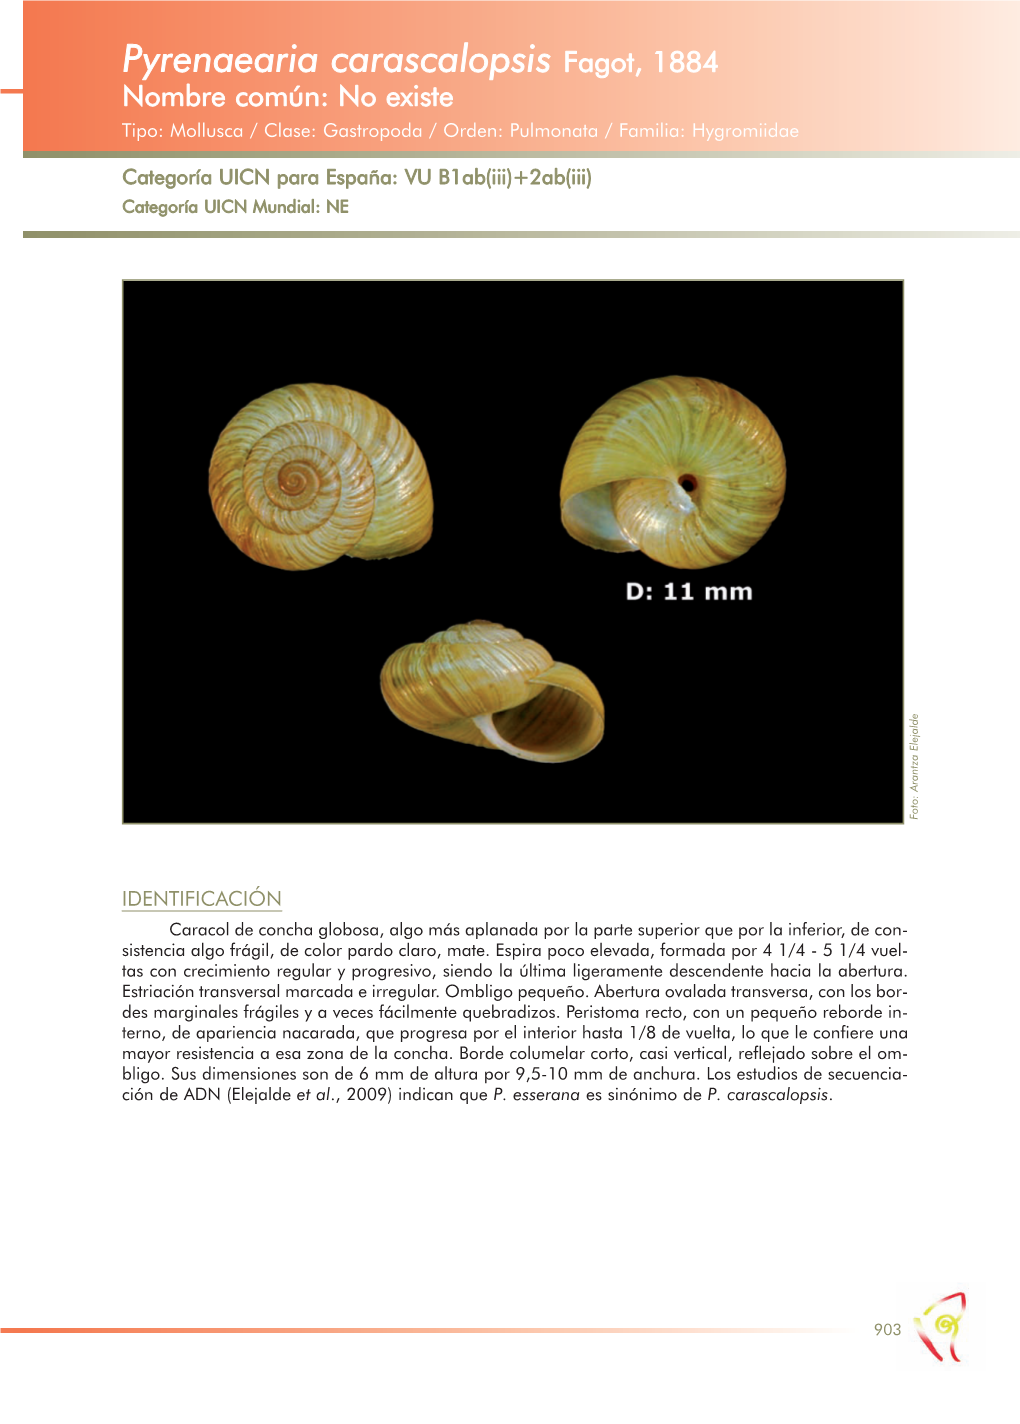 Pyrenaearia Carascalopsis Fagot, 1884 Nombre Común: No Existe Tipo: Mollusca / Clase: Gastropoda / Orden: Pulmonata / Familia: Hygromiidae